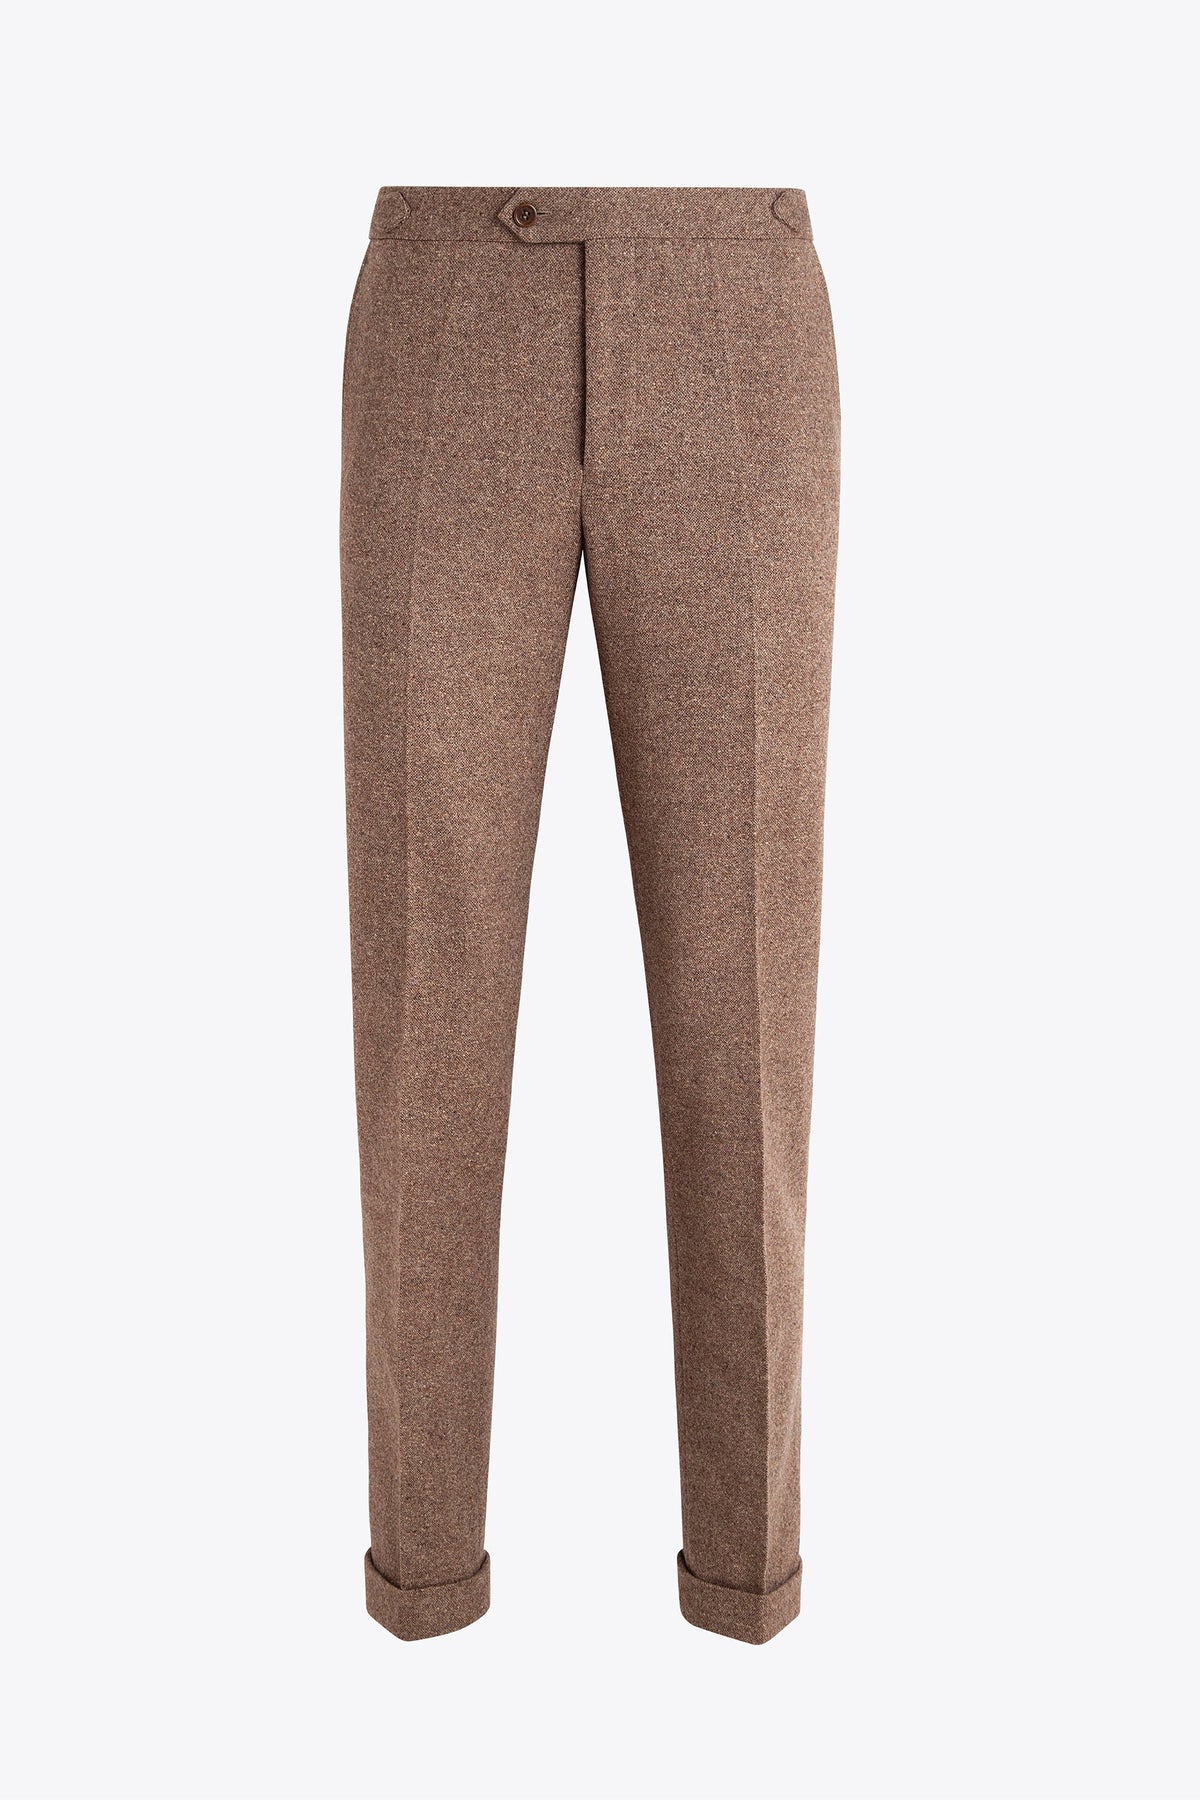 Women's Linen & Harris Tweed Trousers | Walker Slater